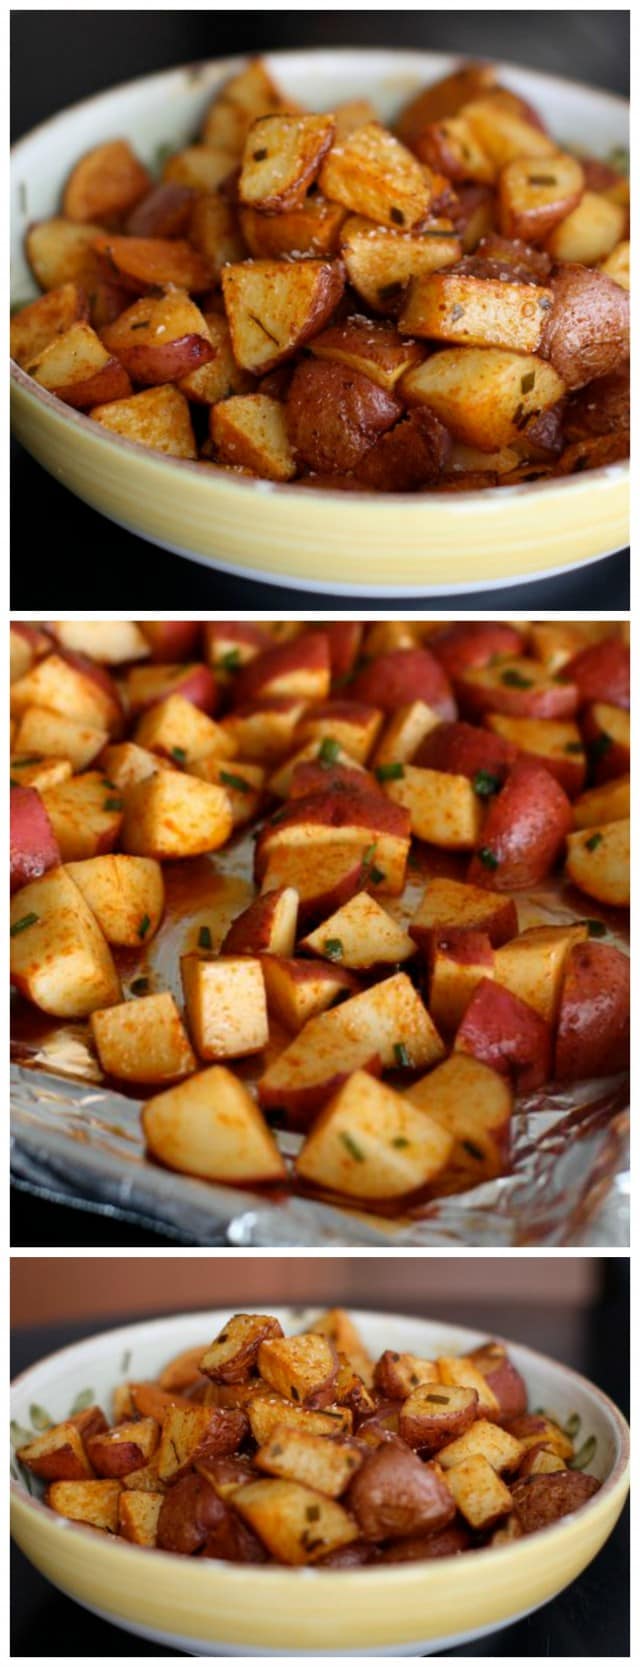 Pieczone czerwone ziemniaki z wędzoną papryką to prosty i zdrowy dodatek do każdego posiłku.